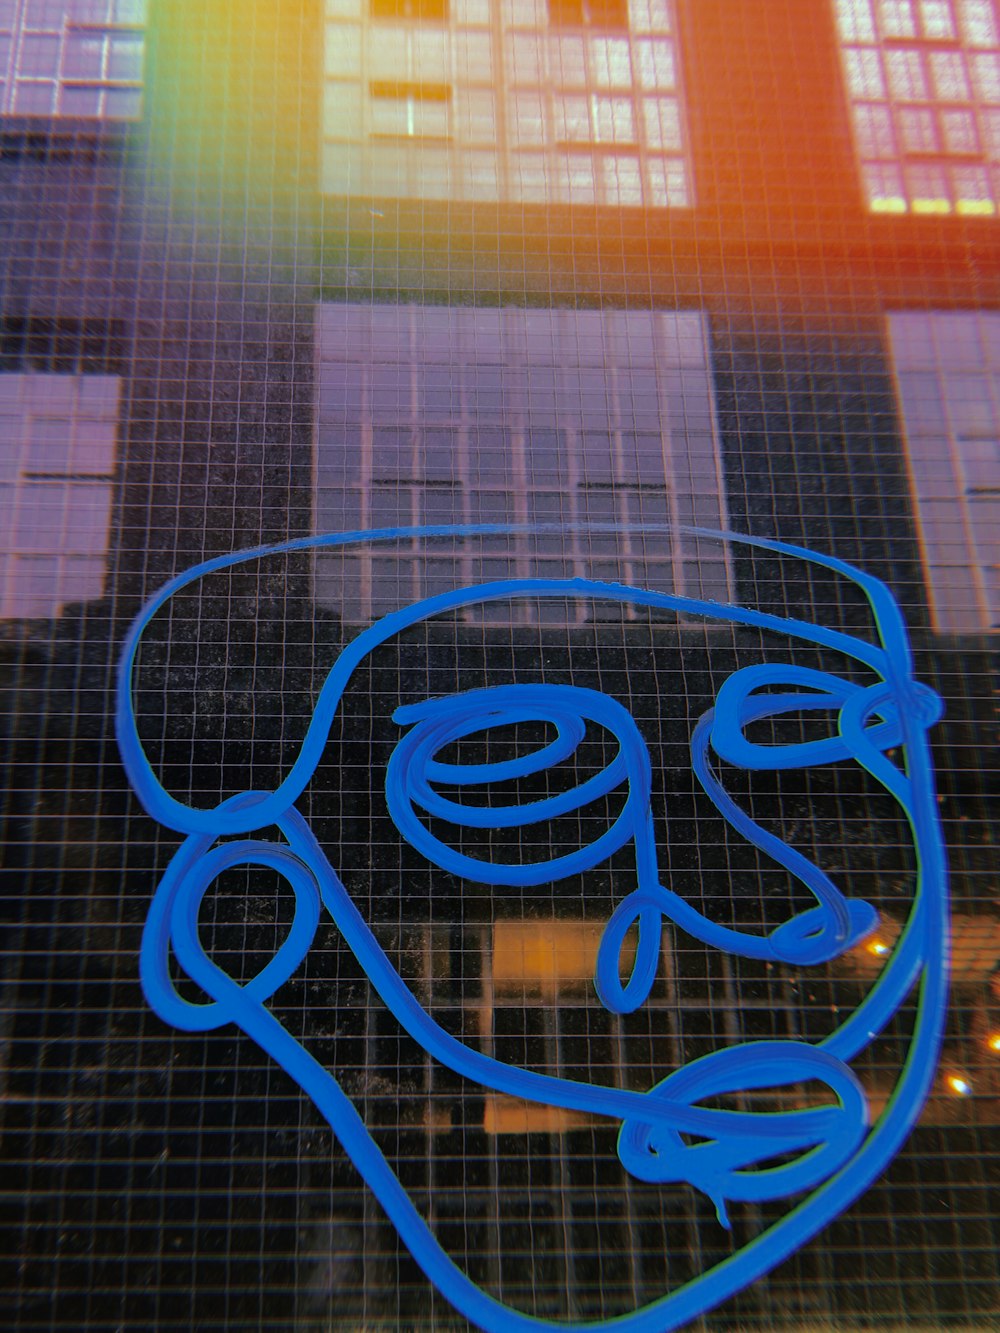 Gesichtsskizze der Person mit blauem Marker